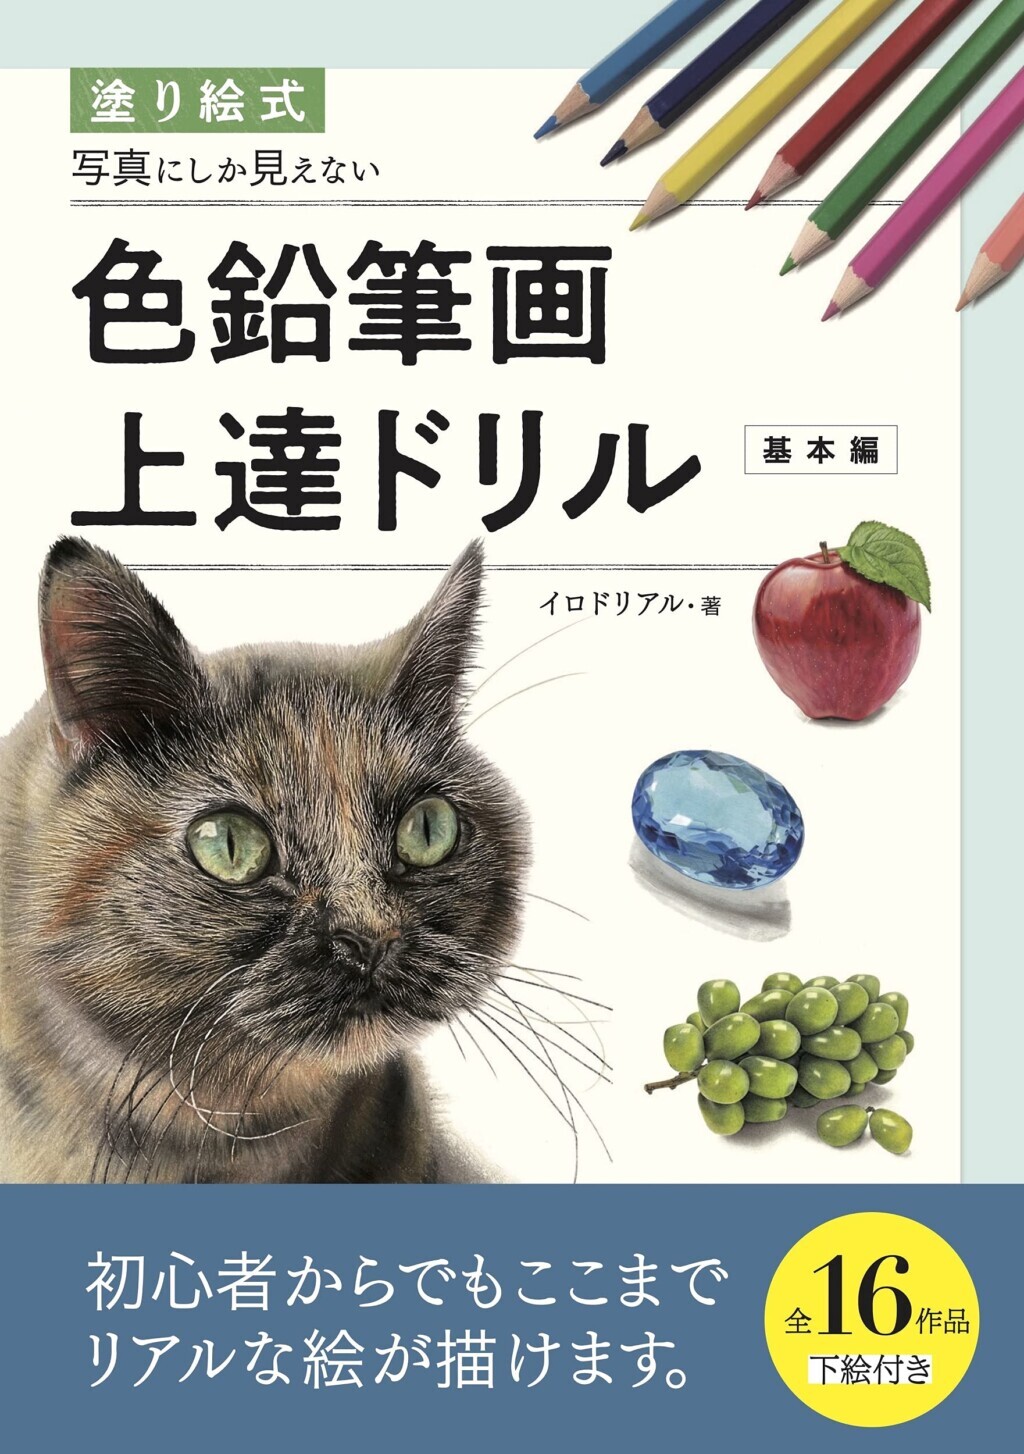 リアルな猫絵を生み出す色鉛筆画家がコツを解説 塗って楽しめる 猫のぬりえ本 ねこナビ